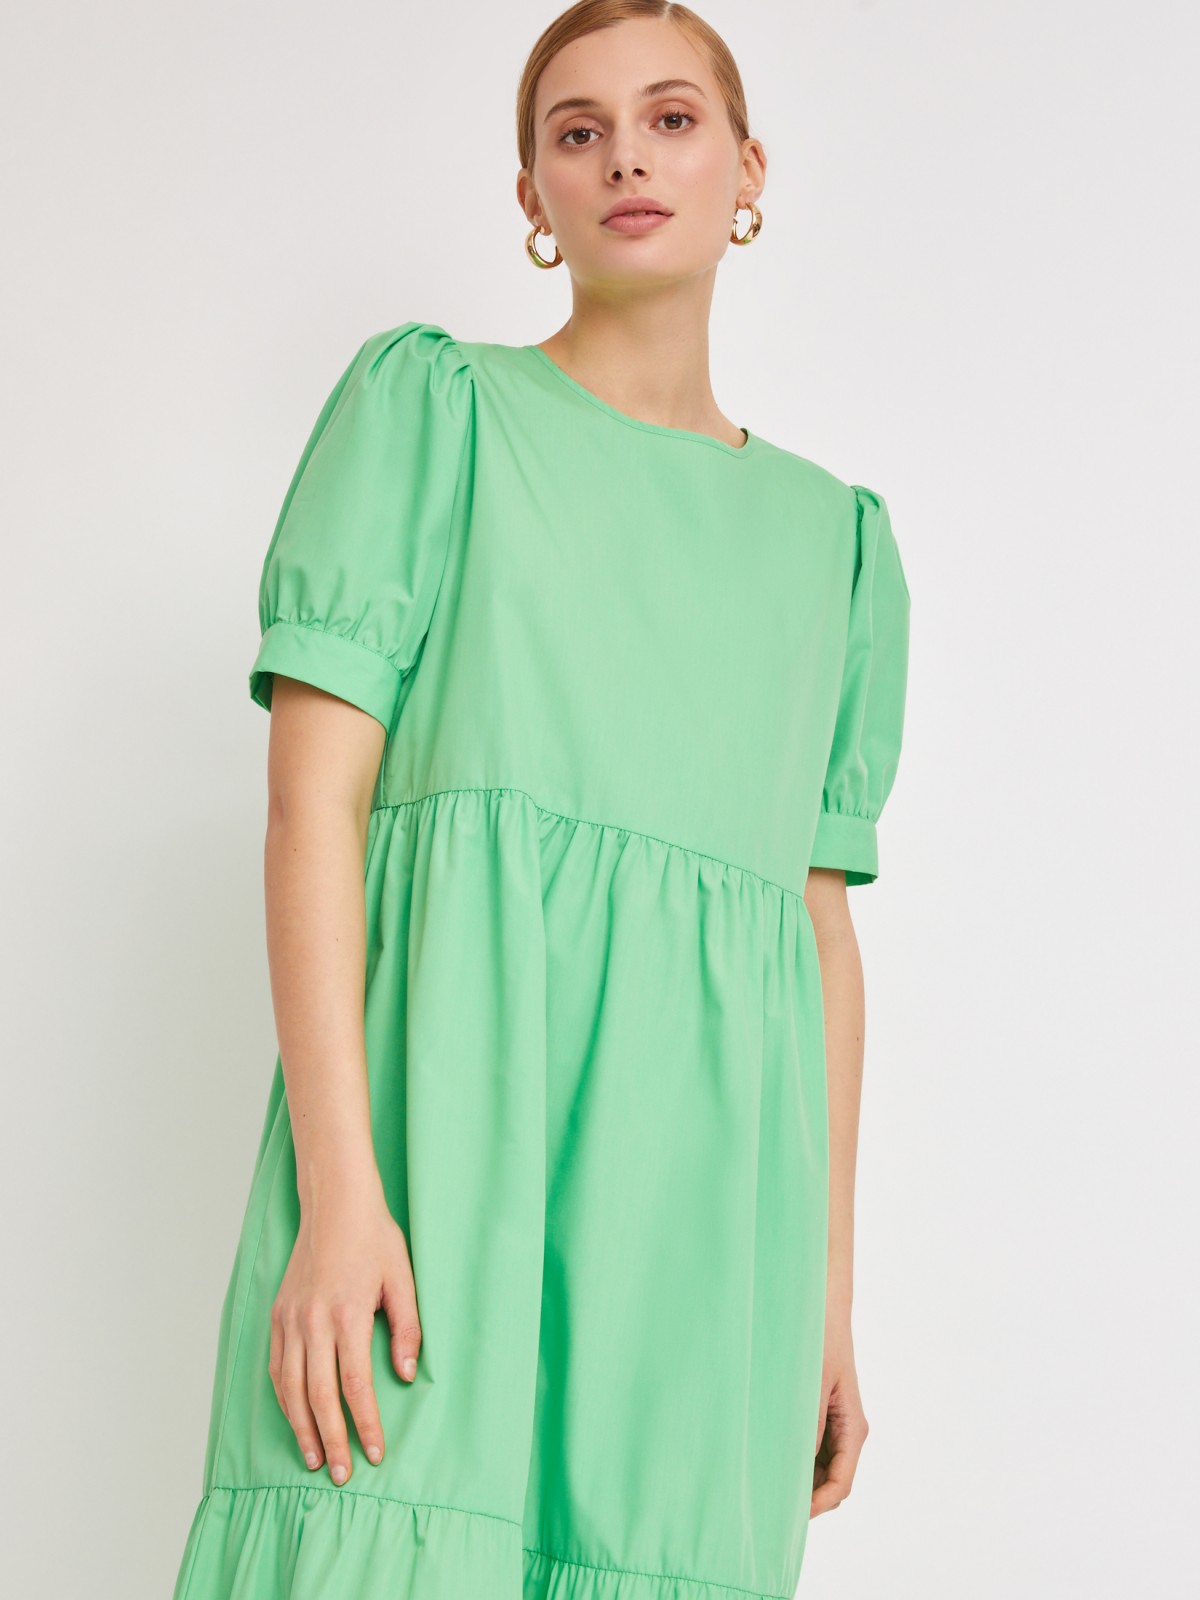 Ярусное платье длины миди zolla 223228259053, цвет светло-зеленый, размер XS - фото 4